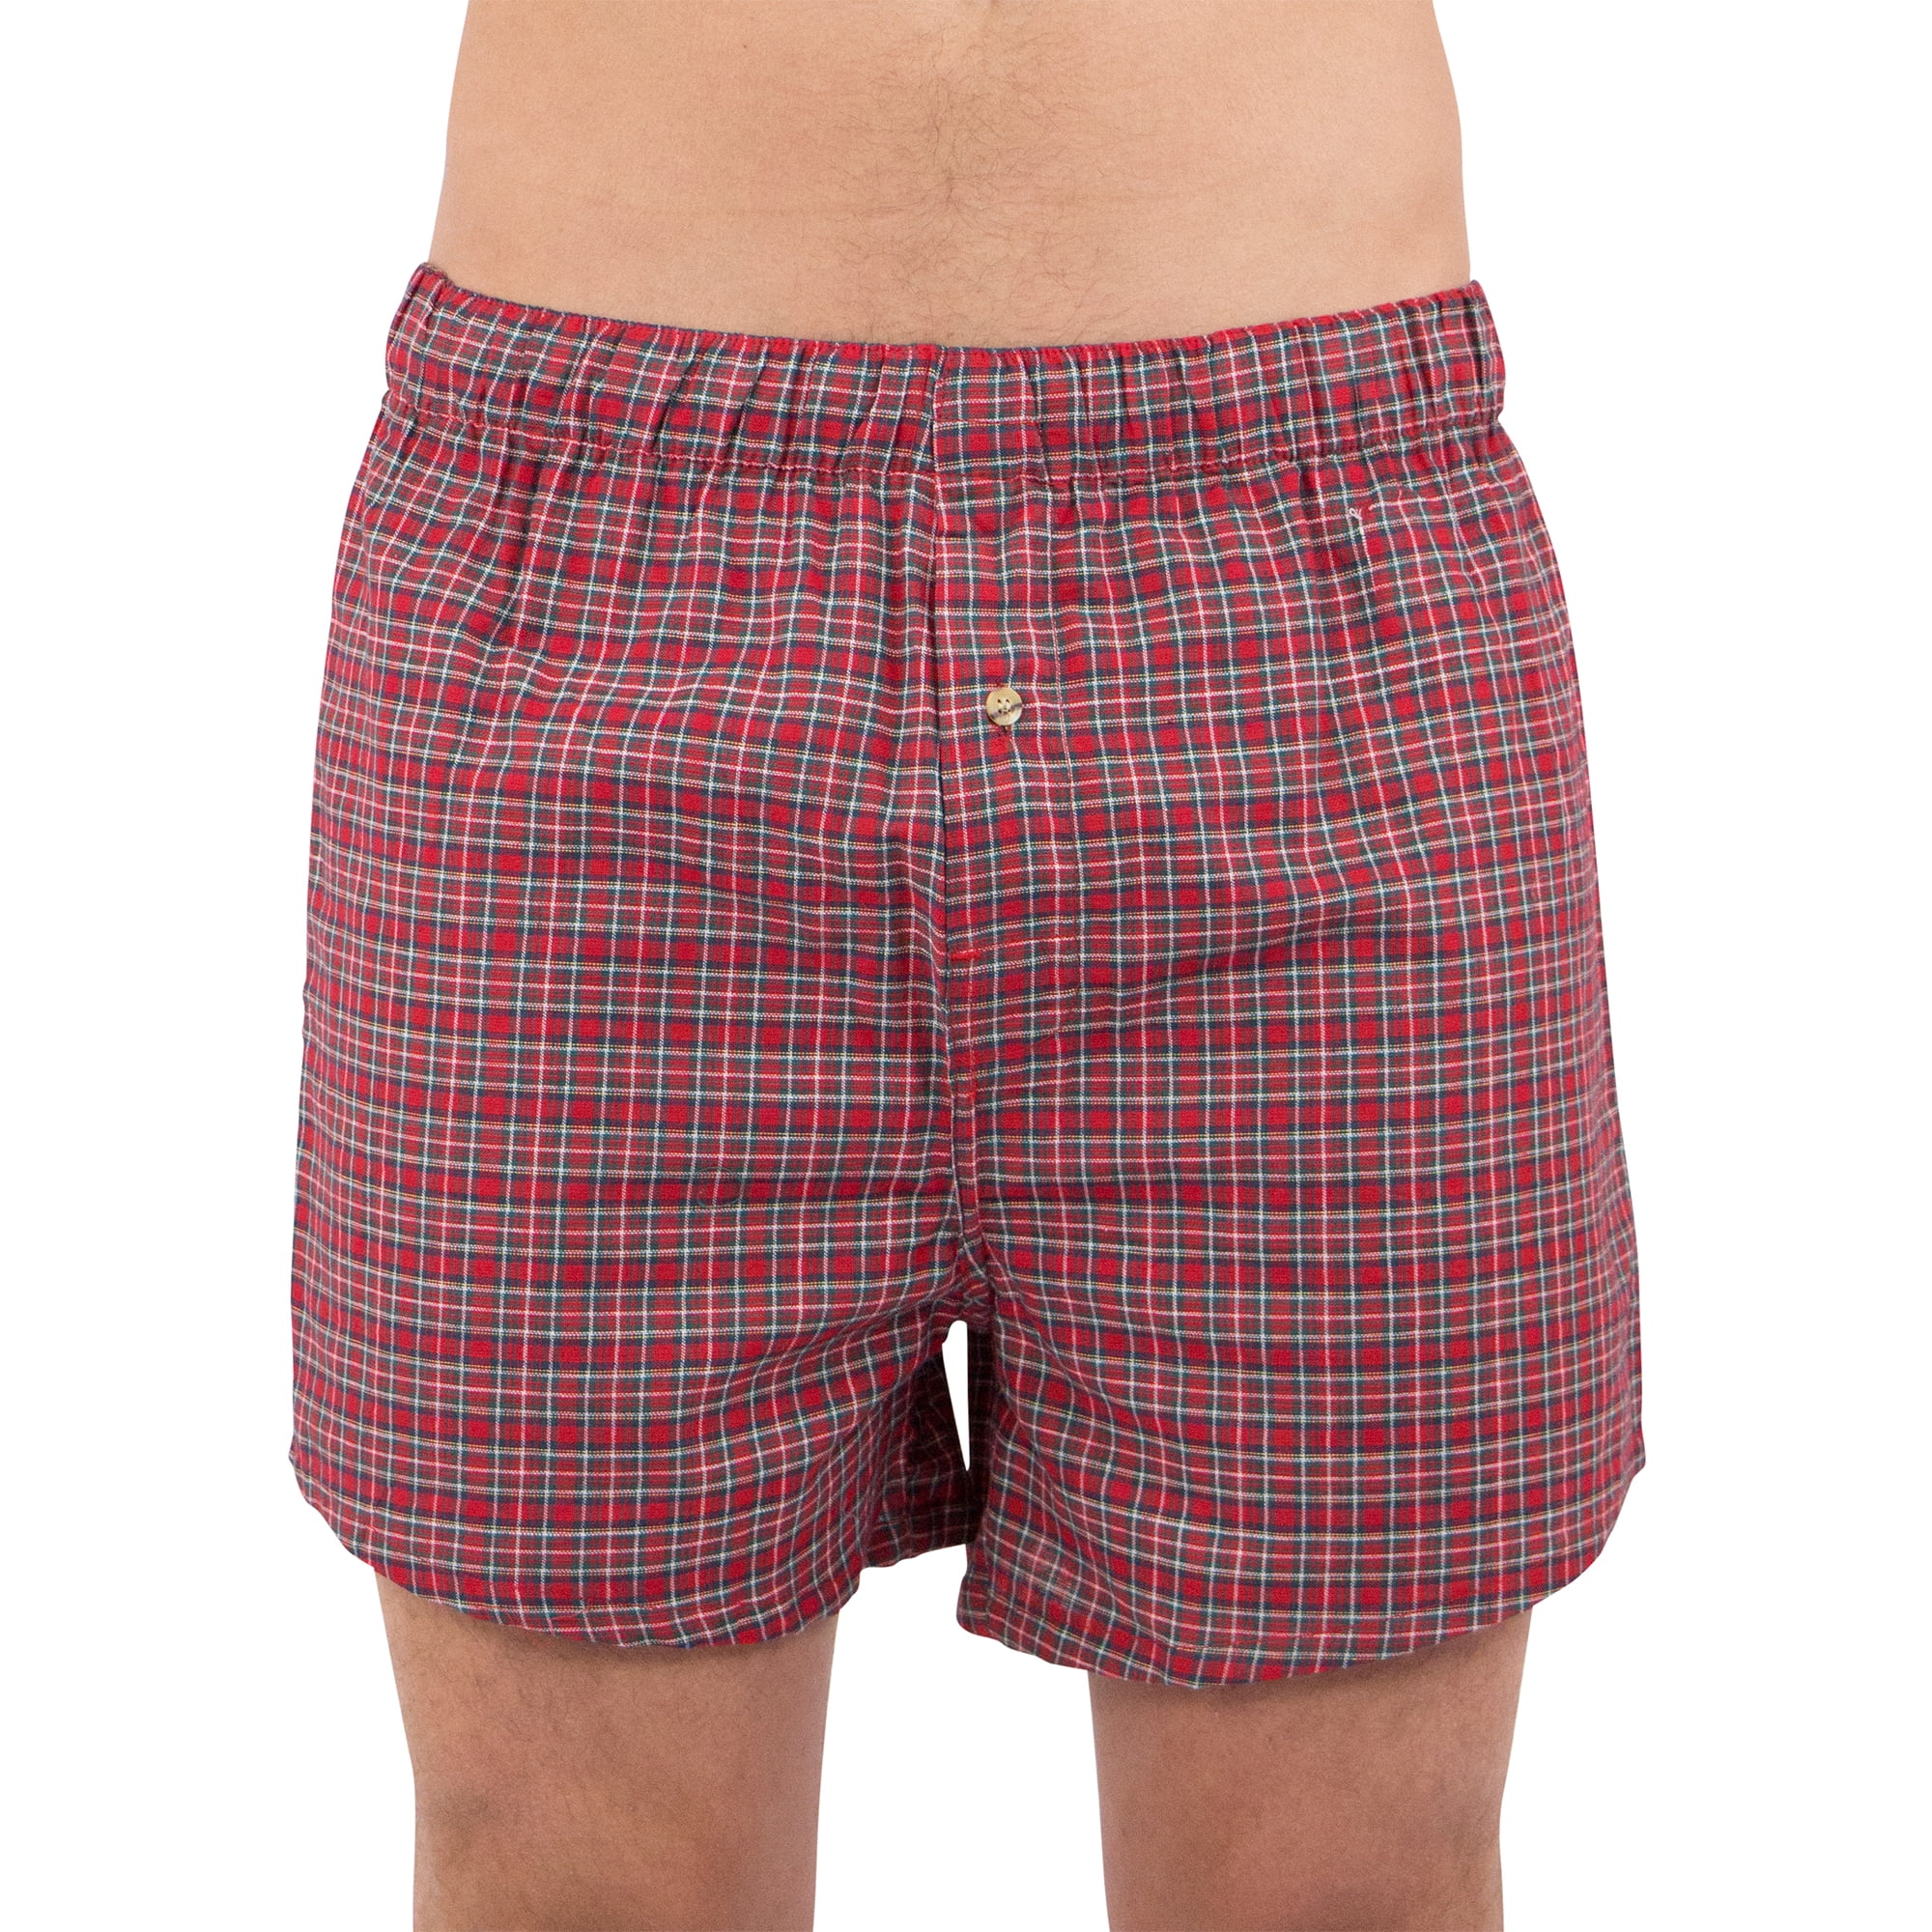 Plaid Boxer Short, Multicolor, Large - Walmart.com